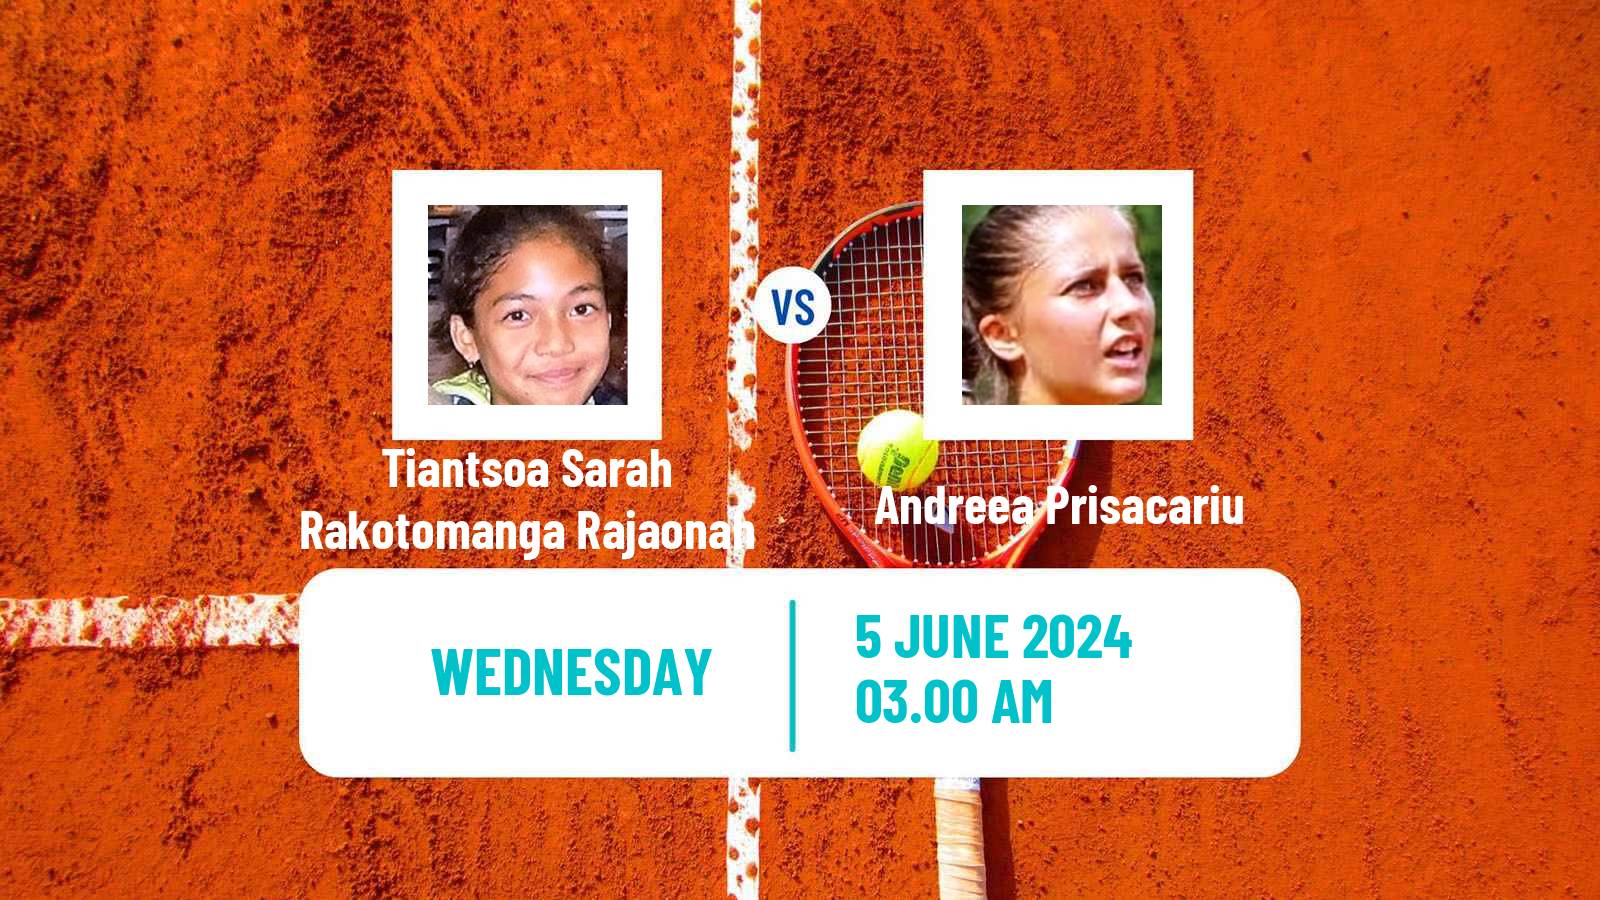 Tennis ITF W35 Kursumlijska Banja 2 Women Tiantsoa Sarah Rakotomanga Rajaonah - Andreea Prisacariu